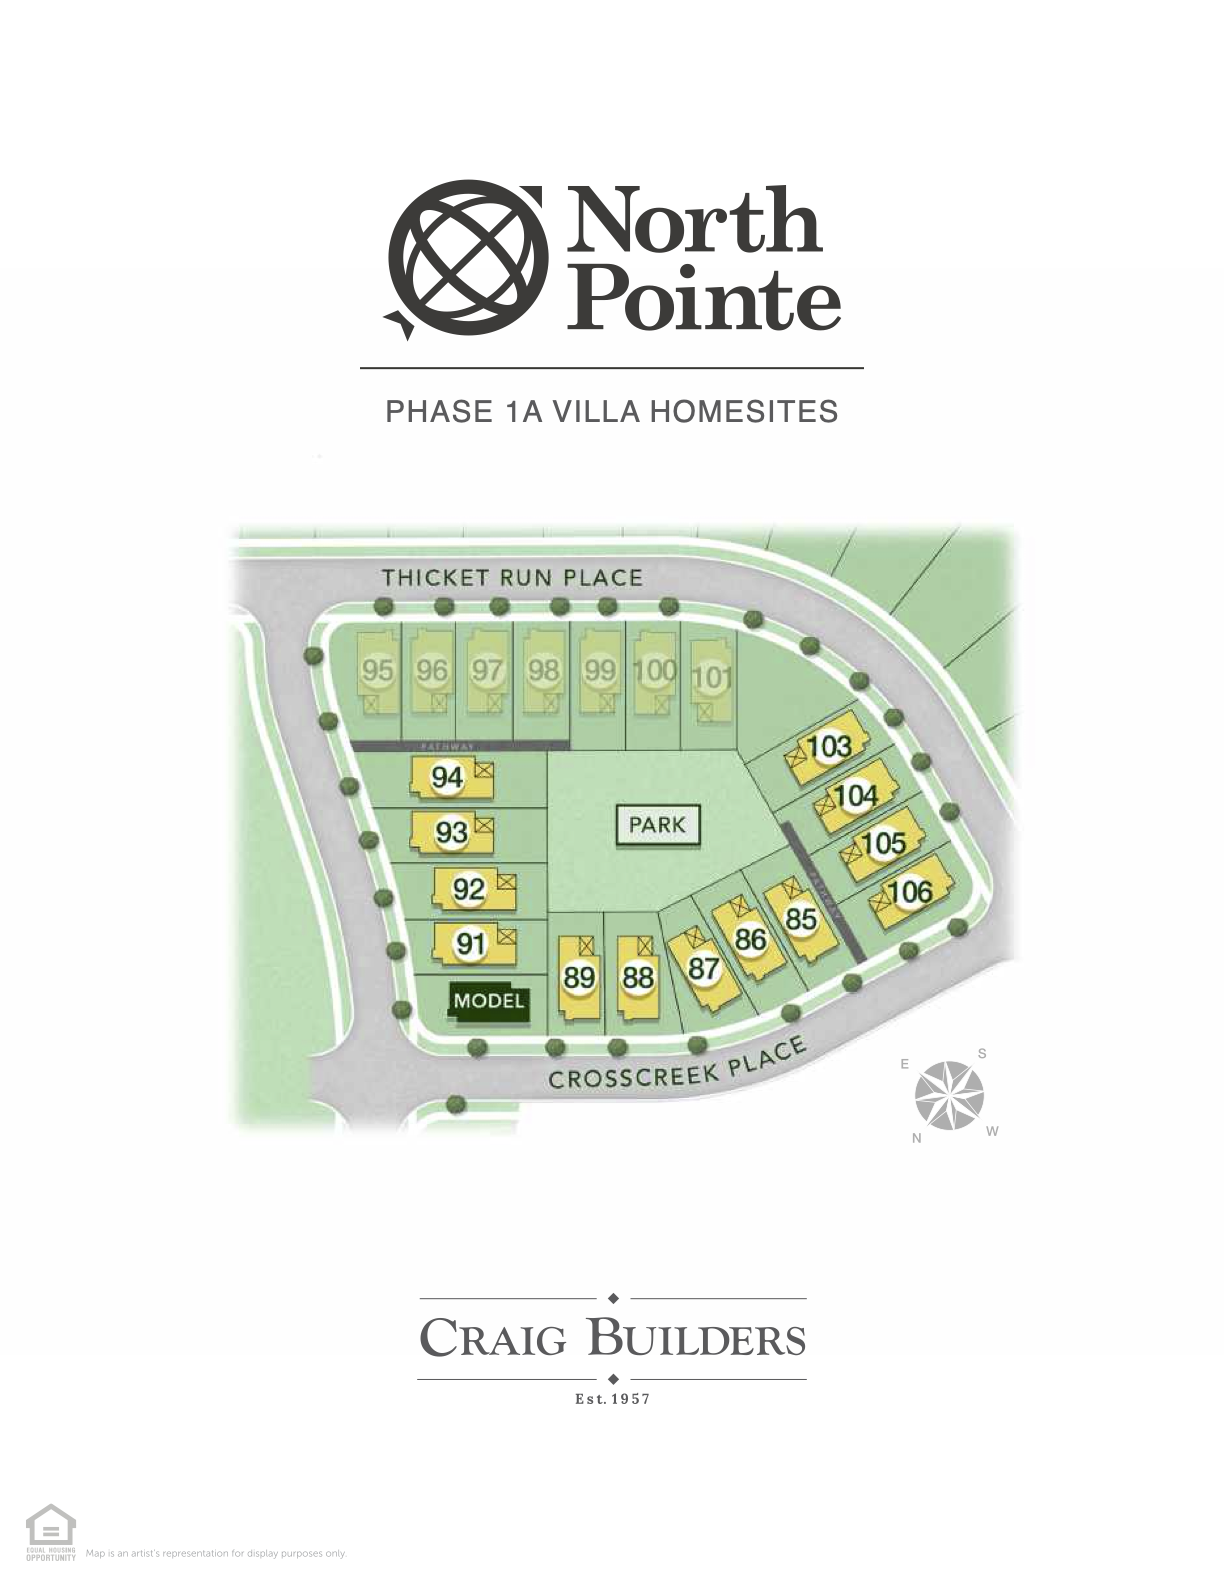 North Pointe Villas Site Map